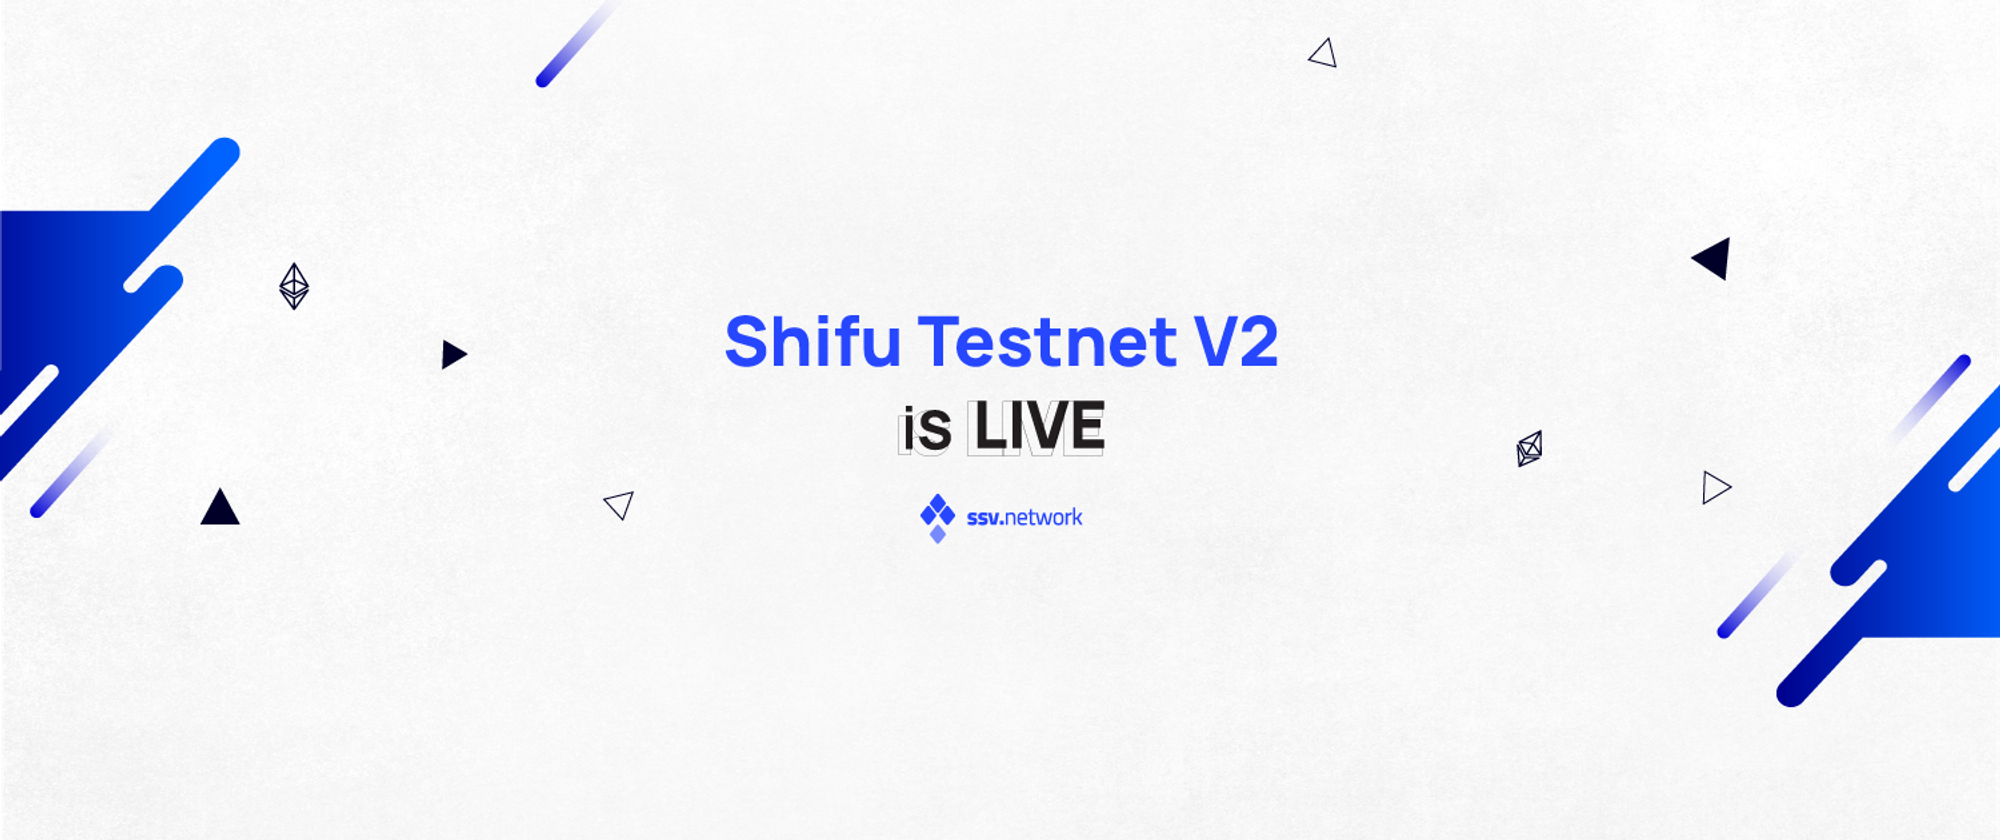 Shifu - Testnet V2 